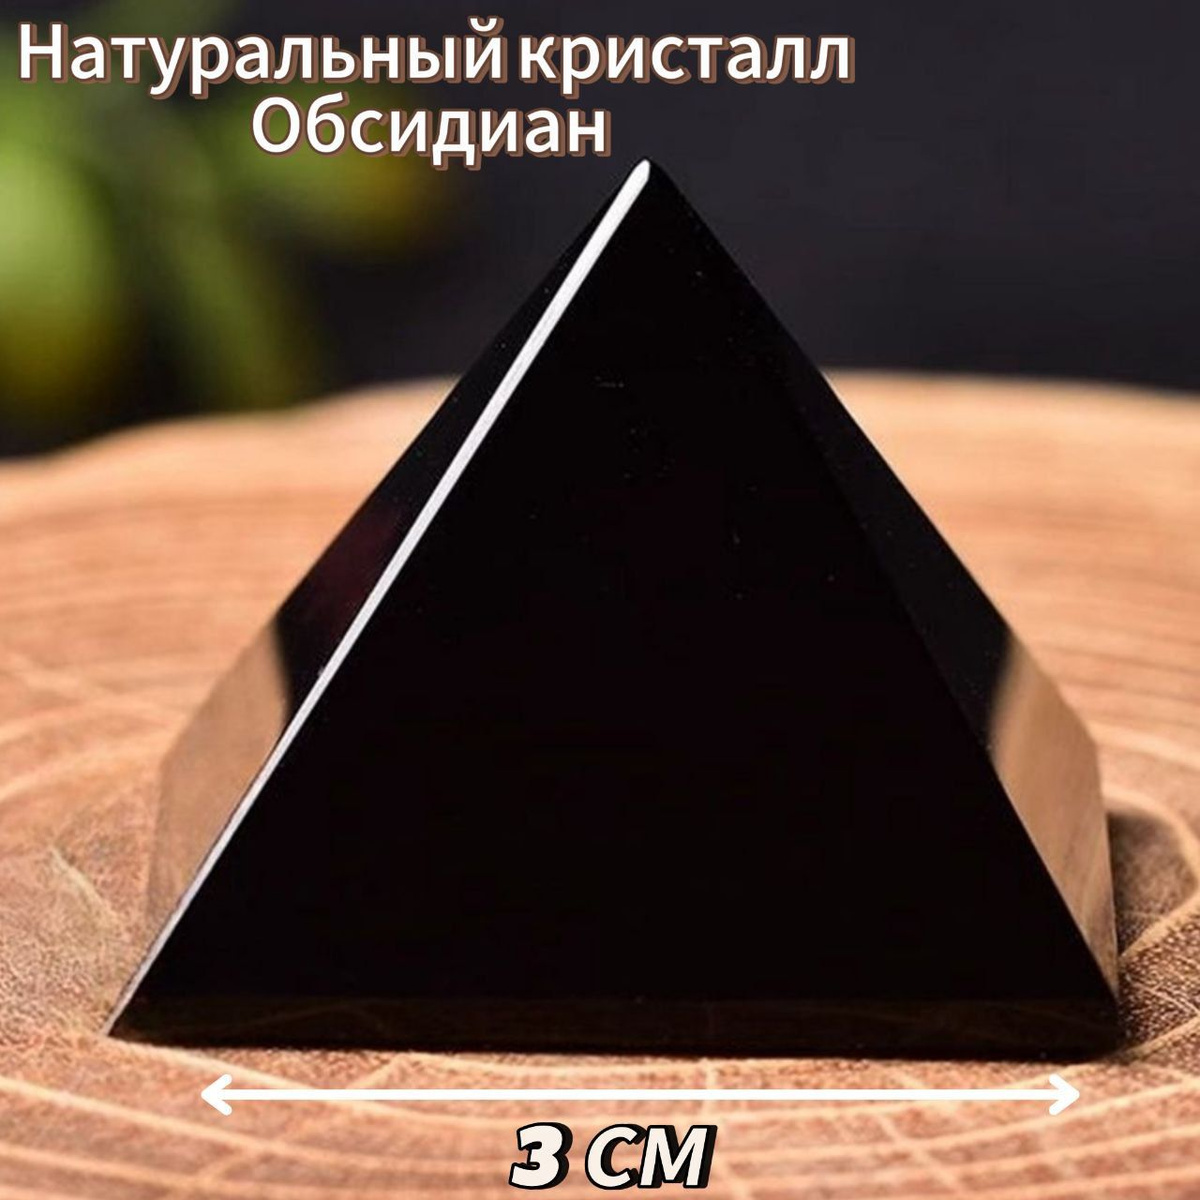 Пирамида из натурального Обсидиана, шириной стенки 4 см в подарочной коробочке. Представляет из себя мощный амулет, оберег, талисман. Отличный подарок для любимых и близких Вам людей, который покажет Вашу заботу. Обратите внимание, камни натуральные, поэтому каждый из них имеет индивидуальную окраску, которая может отличаться от фото. Обсидиан — камень, уникальный по своей природе и внешним характеристикам. Это — вулканическое стекло, быстро застывшая лава, образующаяся в самом сердце нашей планеты. А потому — обладающая особенной энергетикой, силой и свойствами. Это и является причиной, по которой обсидиан был востребован во времена древнего человека и продолжает пользоваться популярностью сегодня.